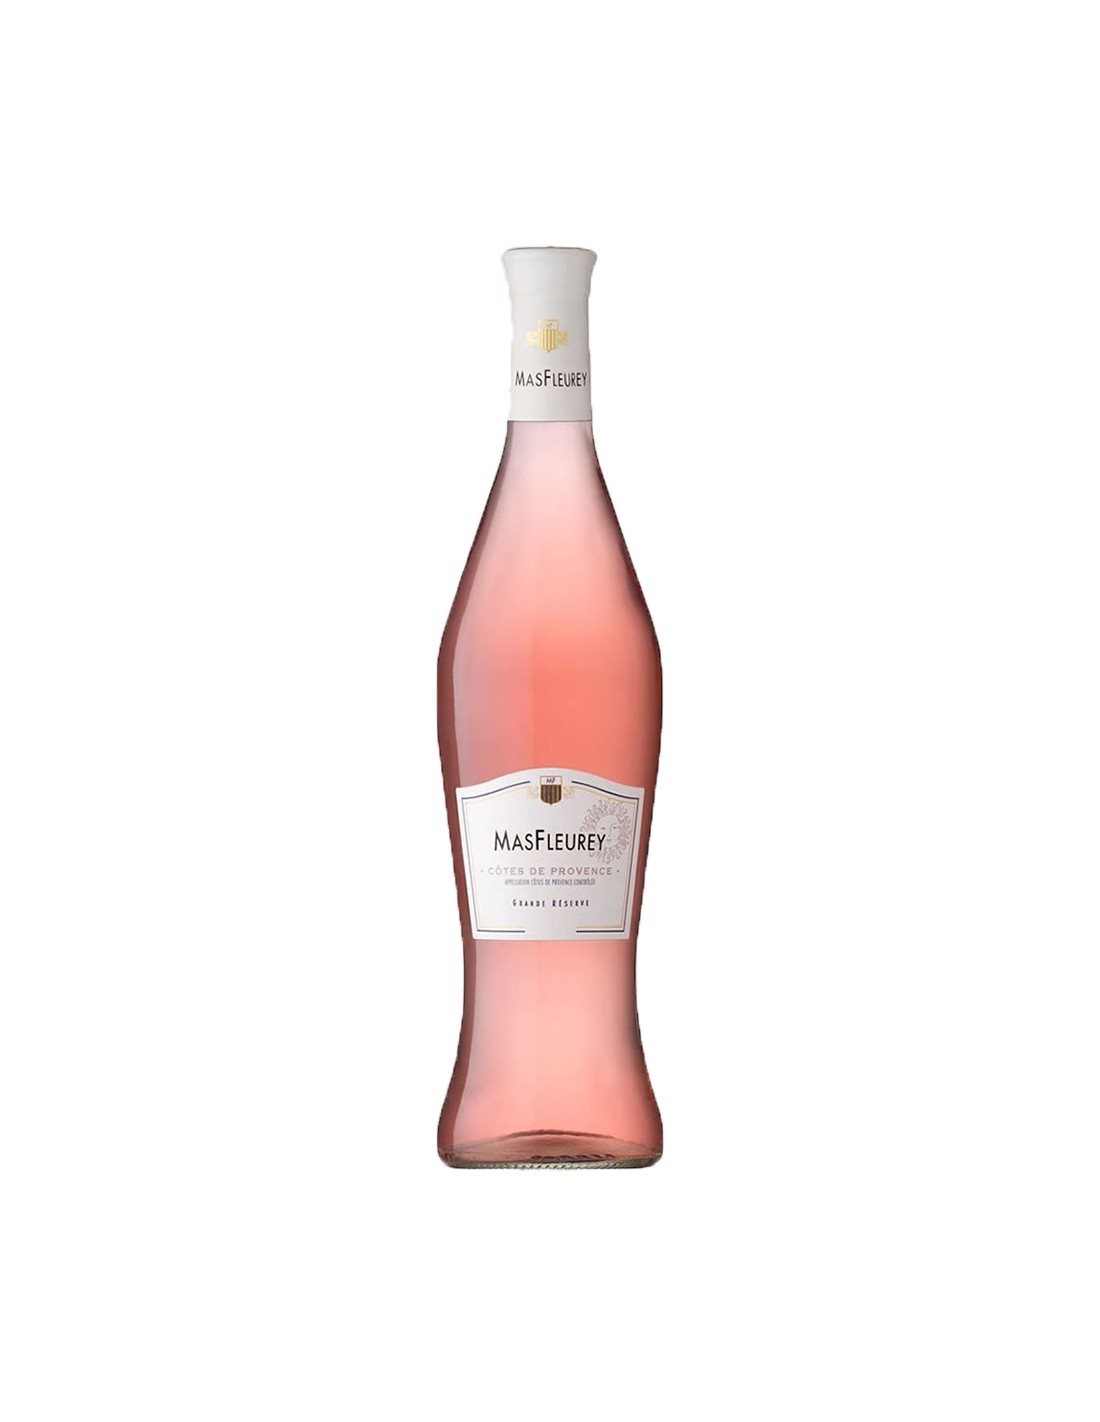 Vin roze sec, Cupaj, Mas Fleurey, Côtes de Provence, 13% alc., 0.75L, Franta alcooldiscount.ro